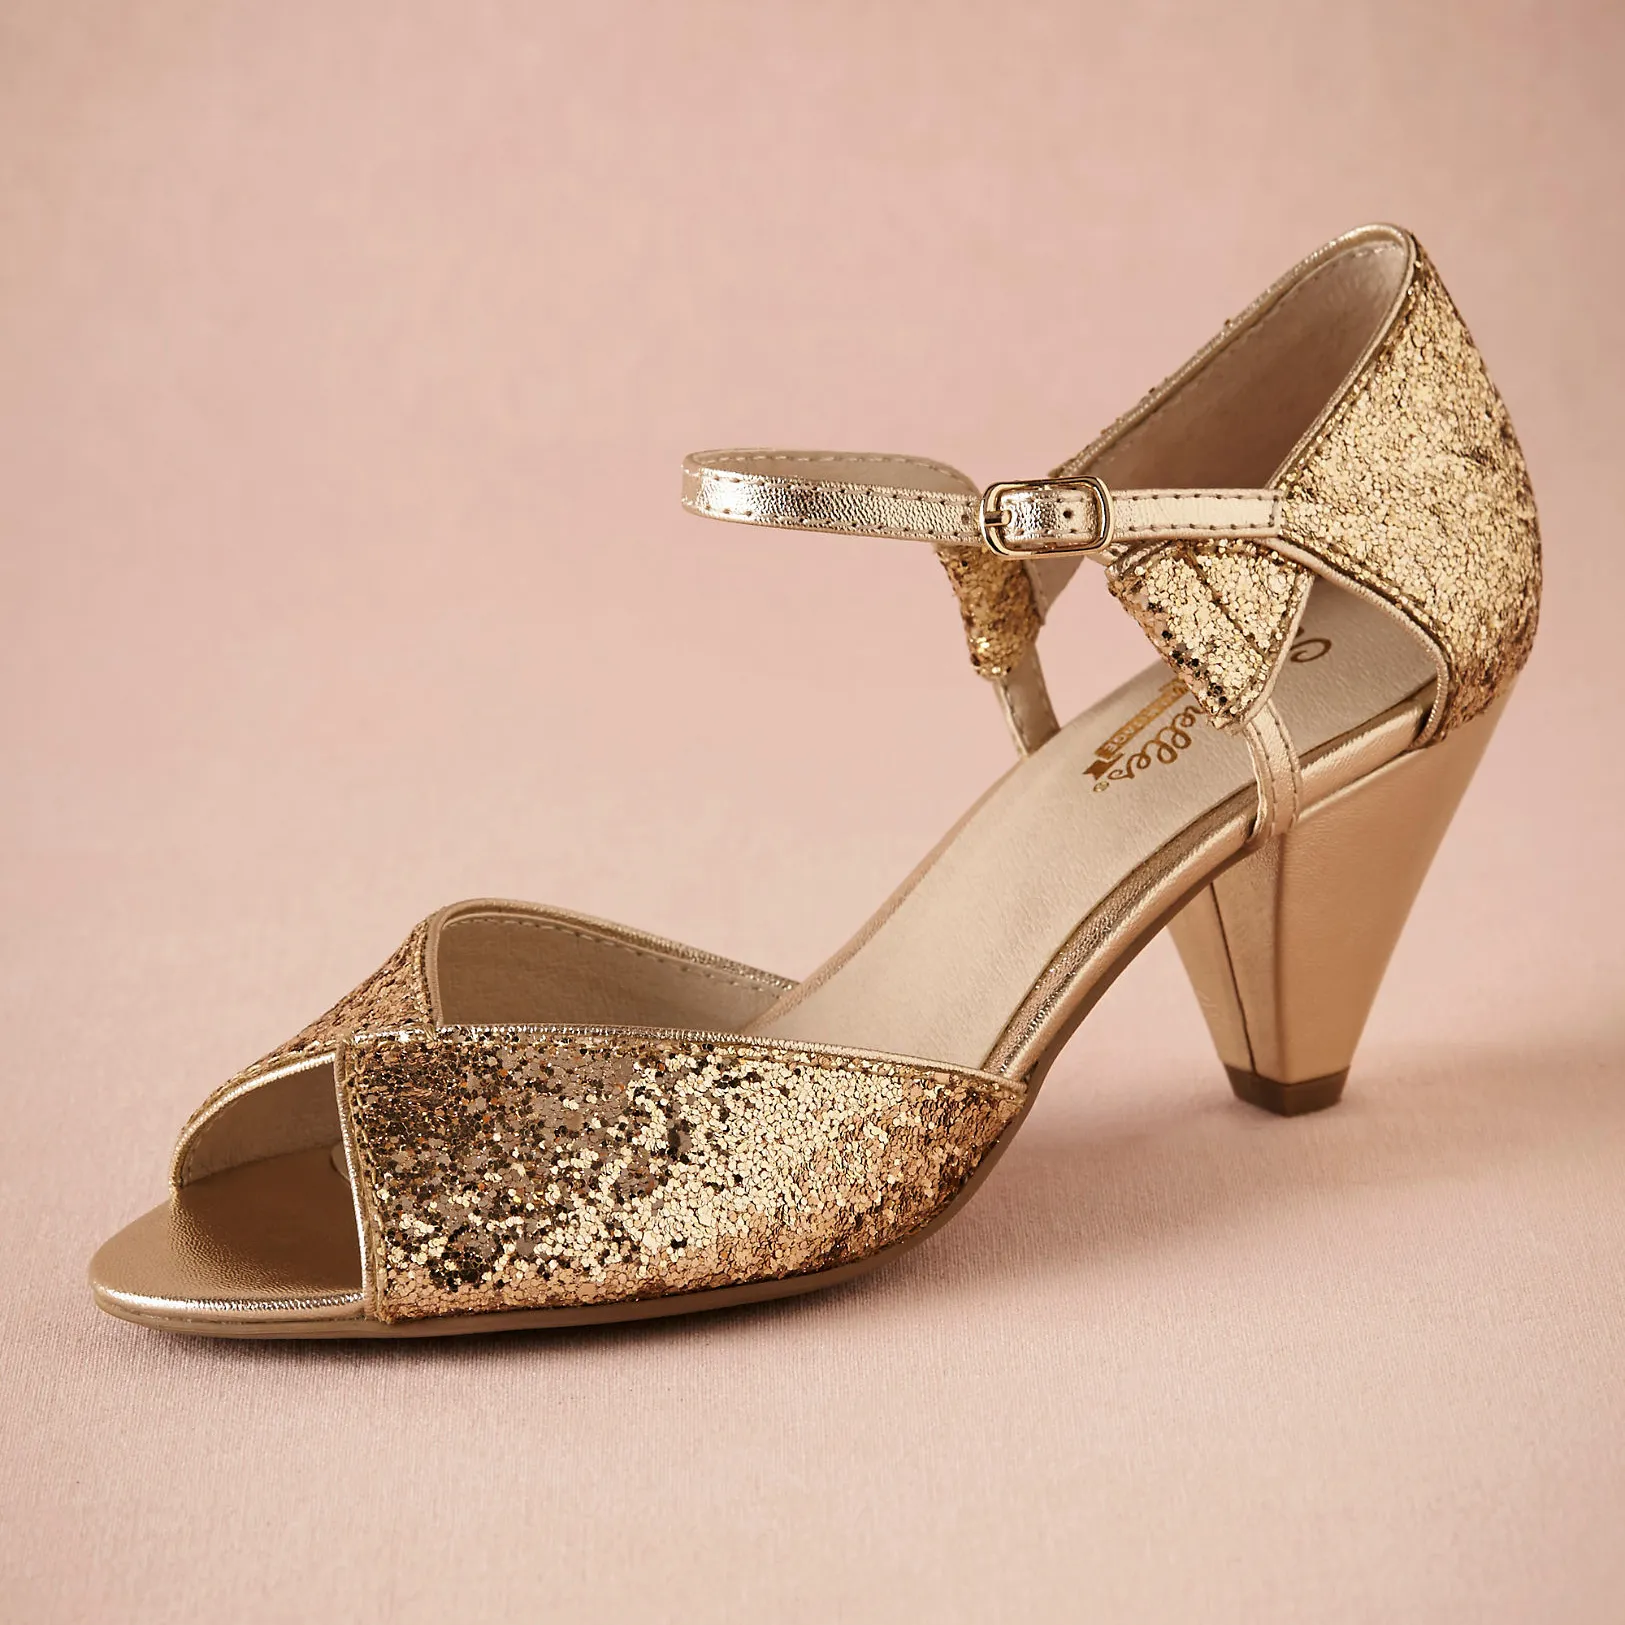 Gold Glitter Spark Свадебные Обувь Ручной Насосы Кожаные Удобные Удобные Насосы Toe 2.5 "Кожаные Конусные каблуки Женщины Сандалии Танцы Обувь